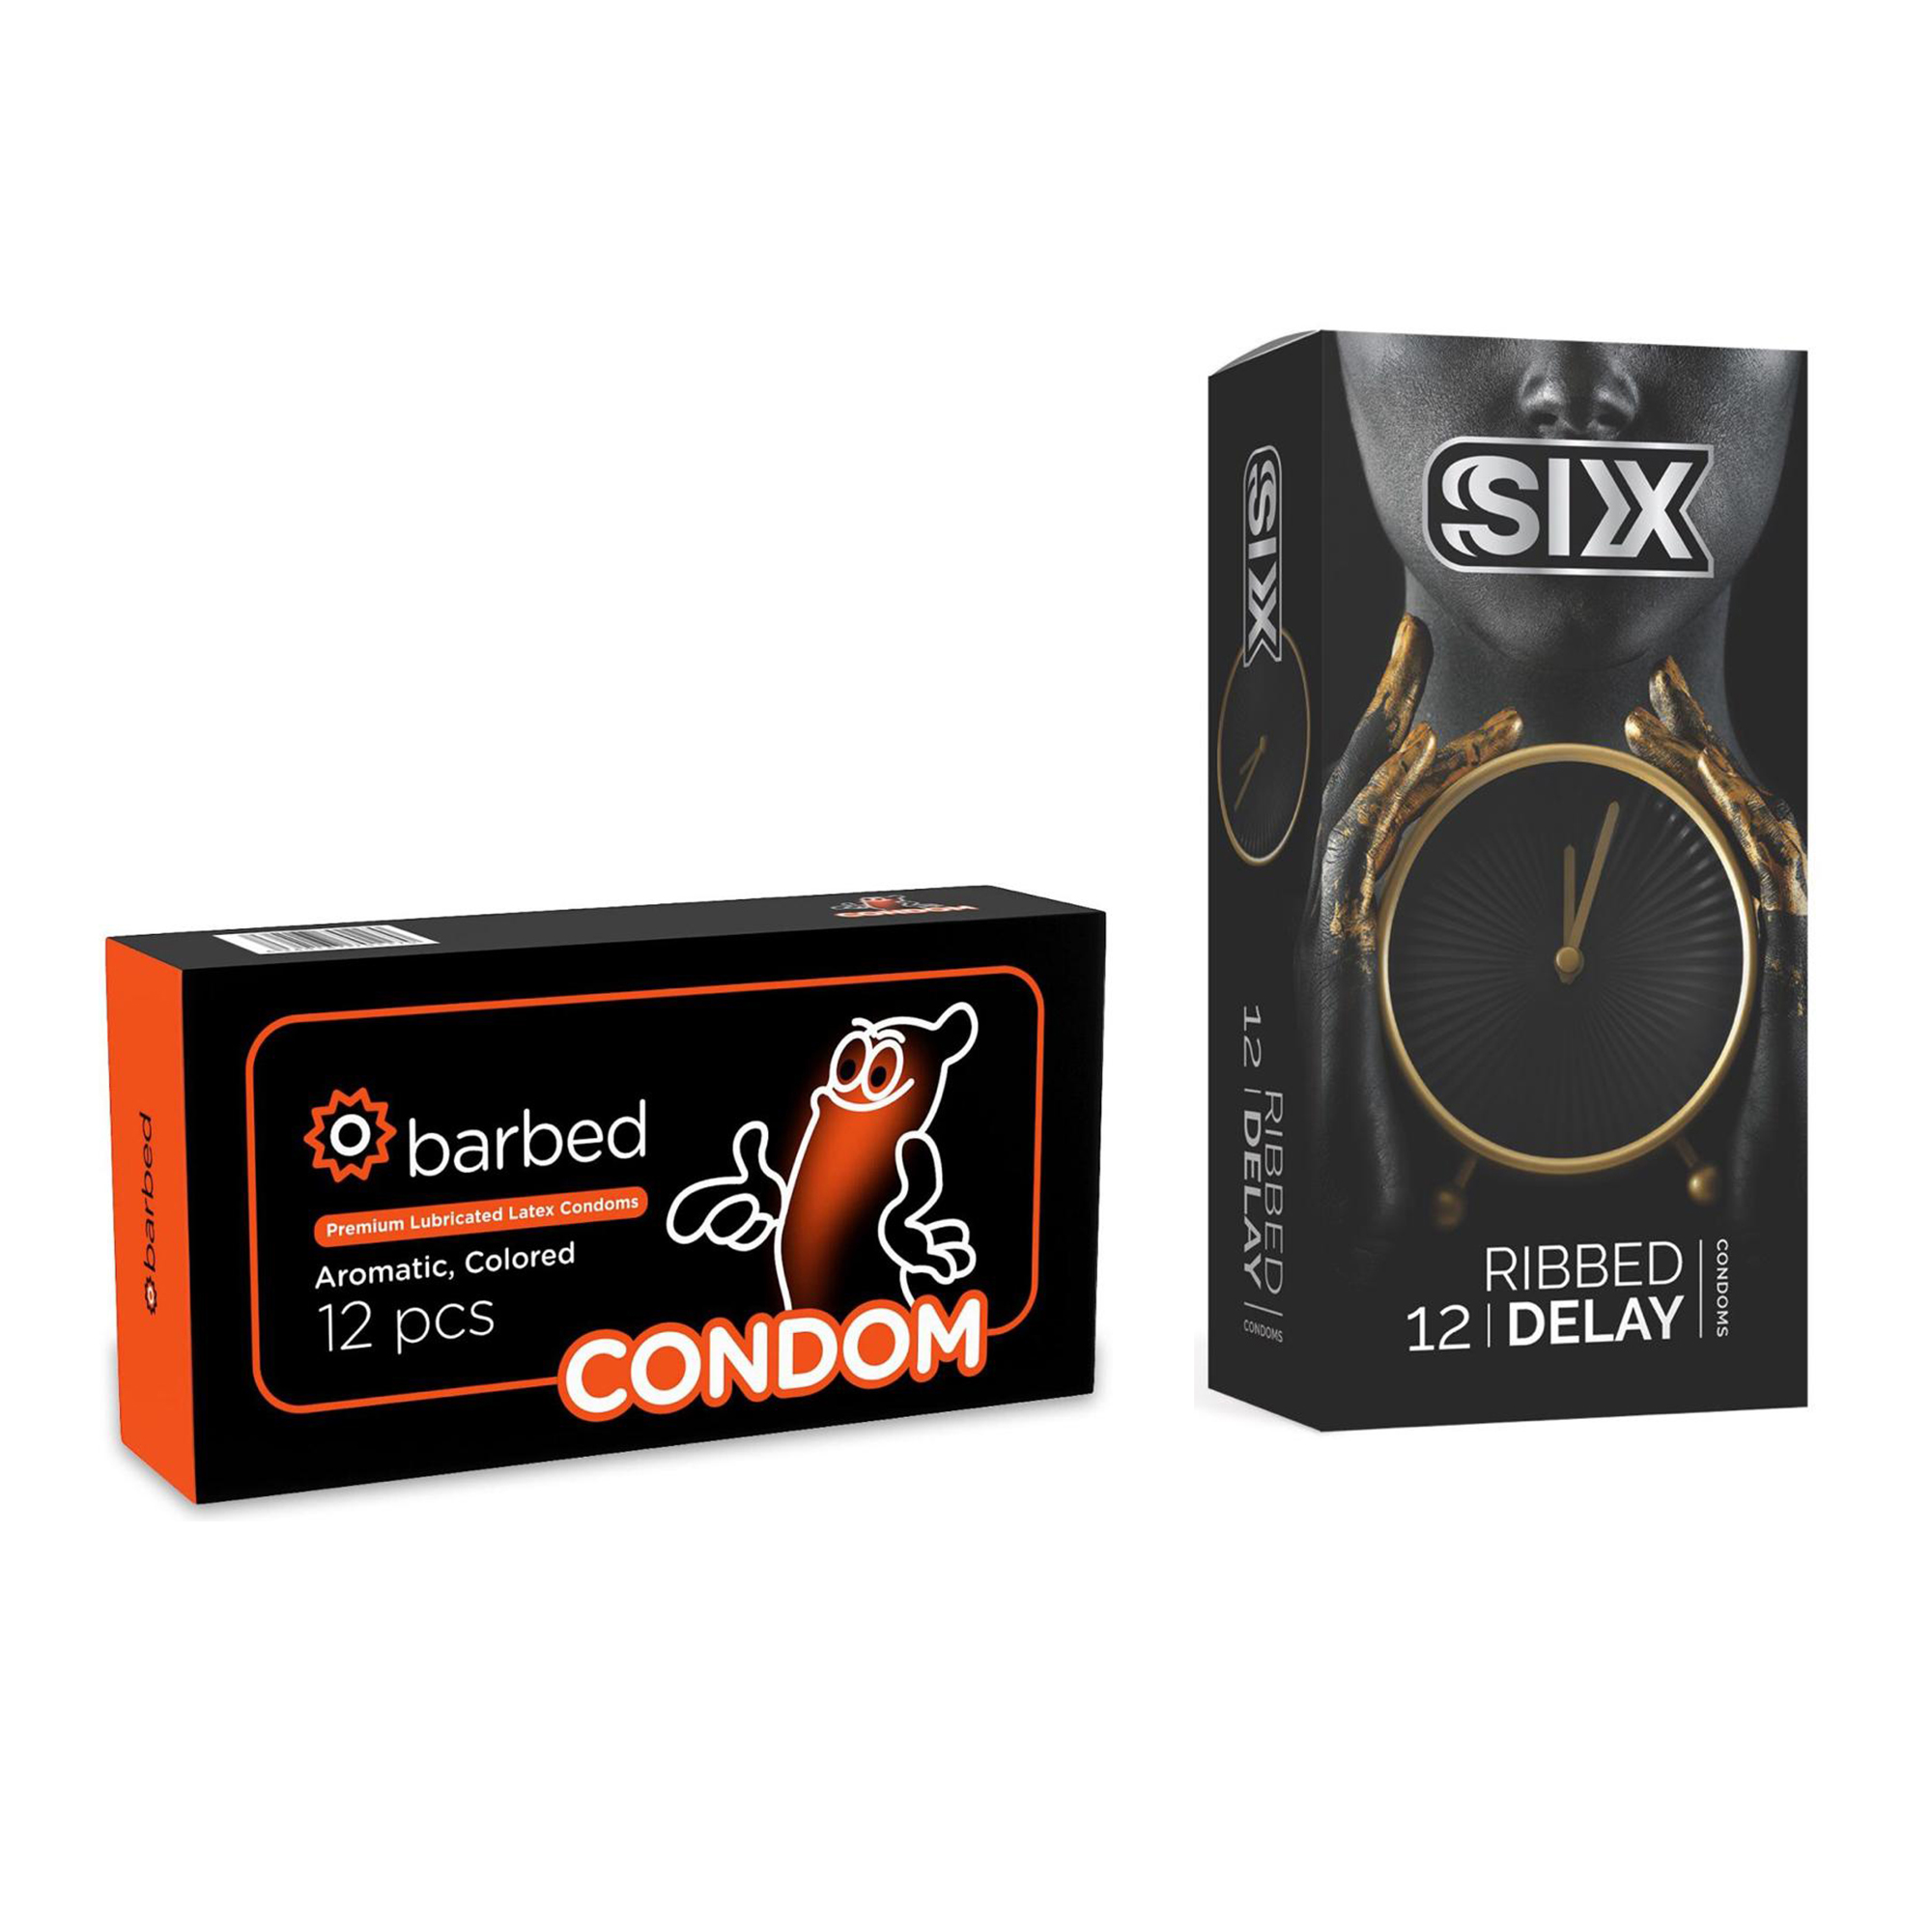 کاندوم سیکس مدل Ribbed Delay بسته 12 عددی به همراه کاندوم کاندوم مدل Barbed بسته 12 عددی